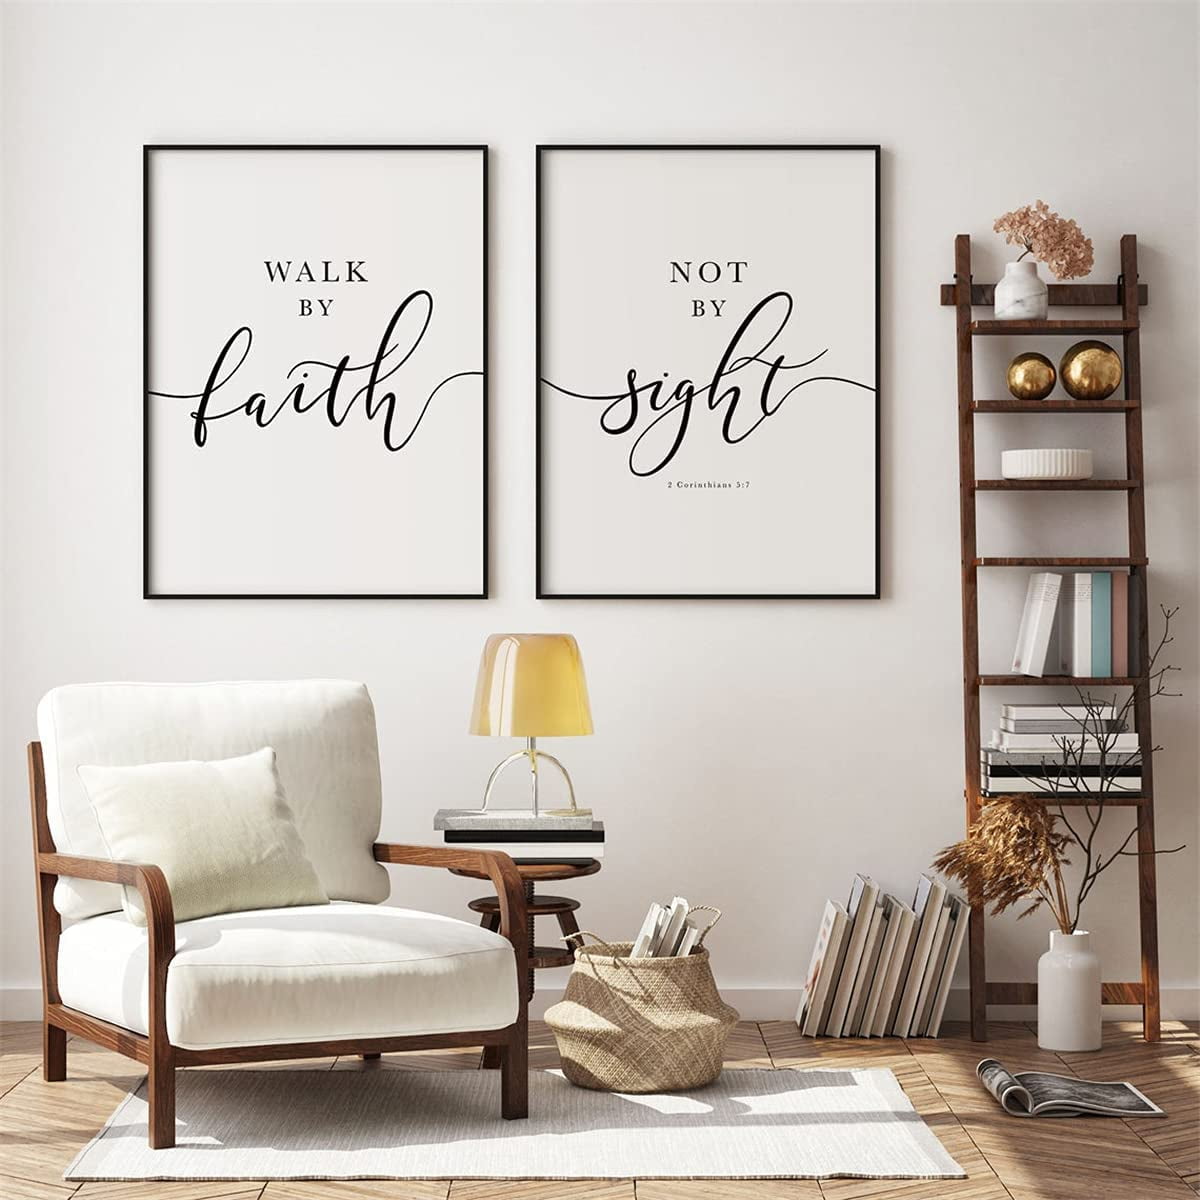 Update more than 158 faith wallpaper best - vova.edu.vn